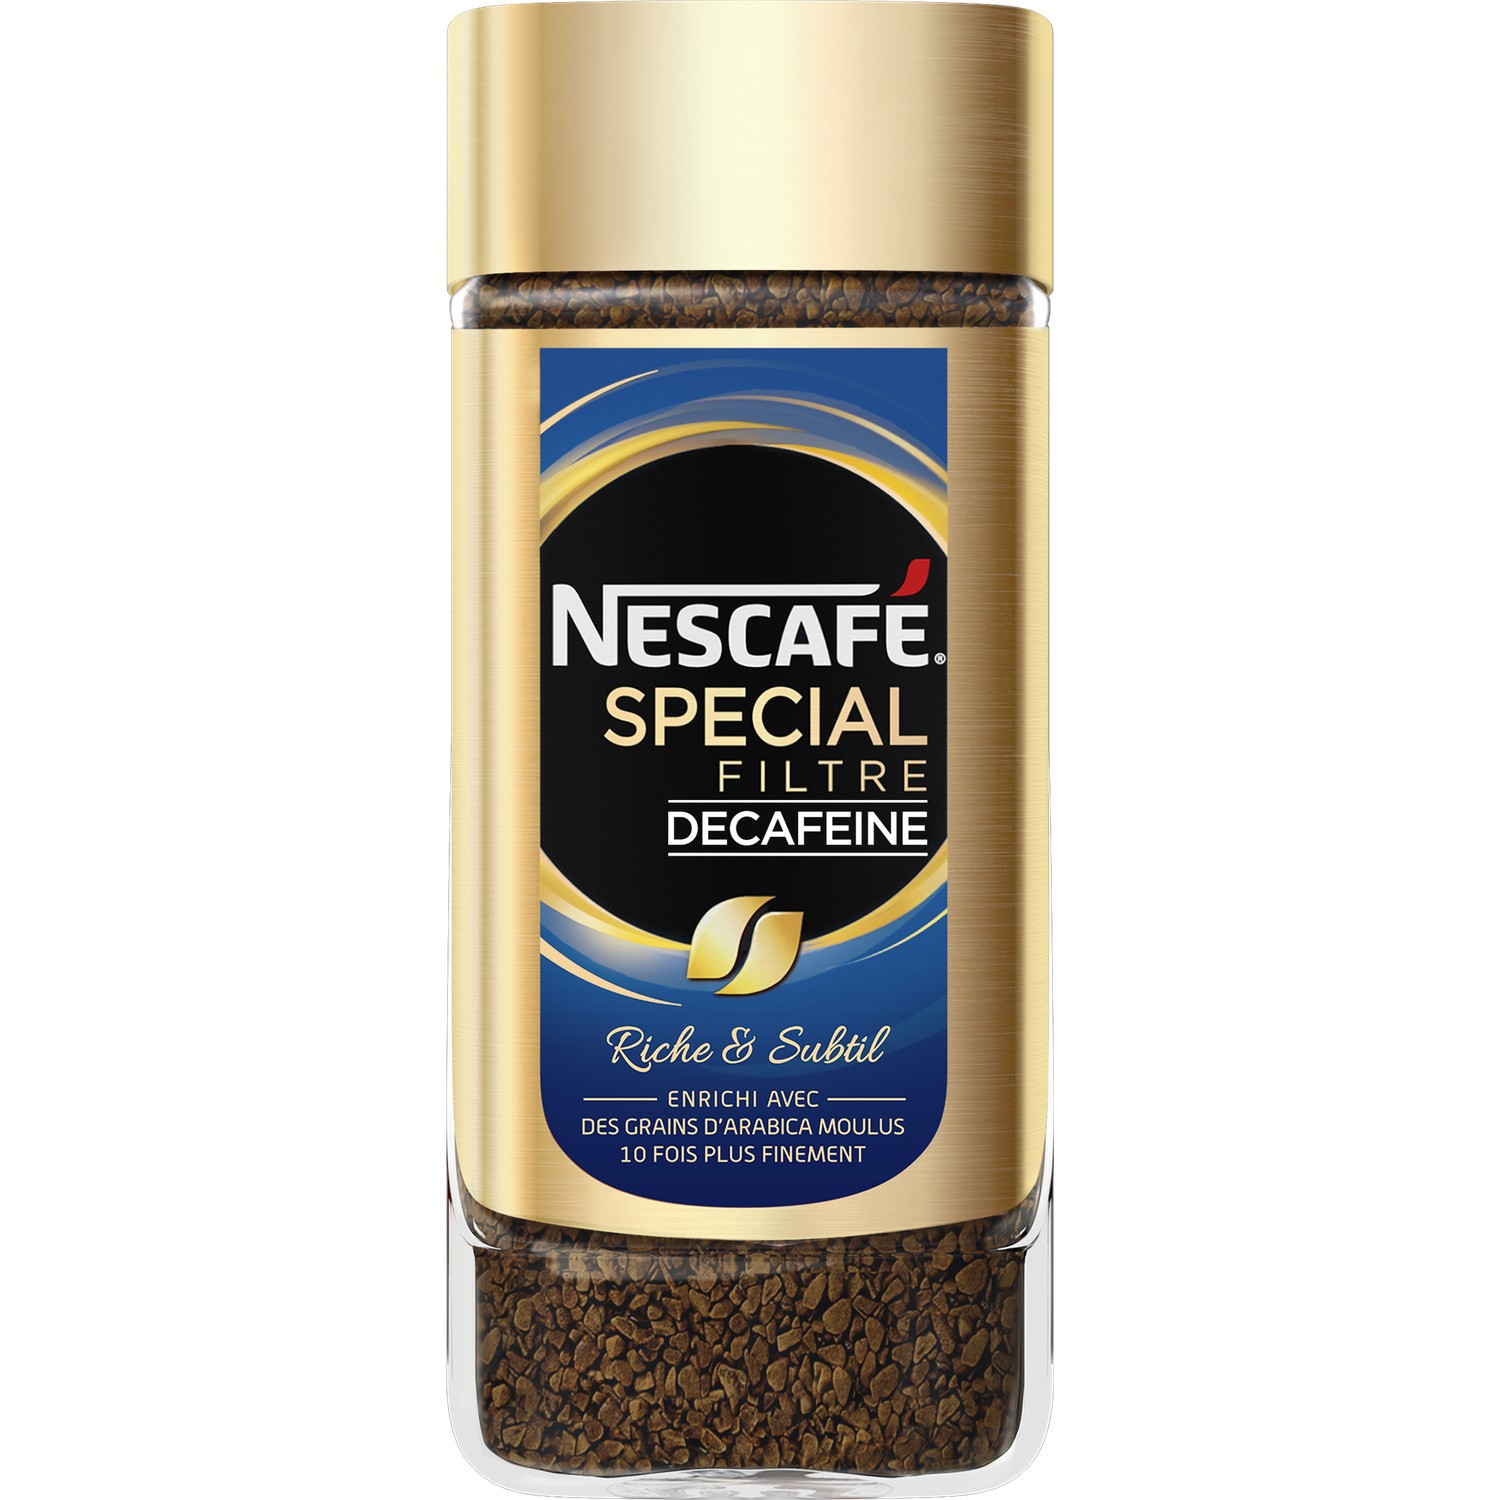 Nescafe spécial filtre décaféiné